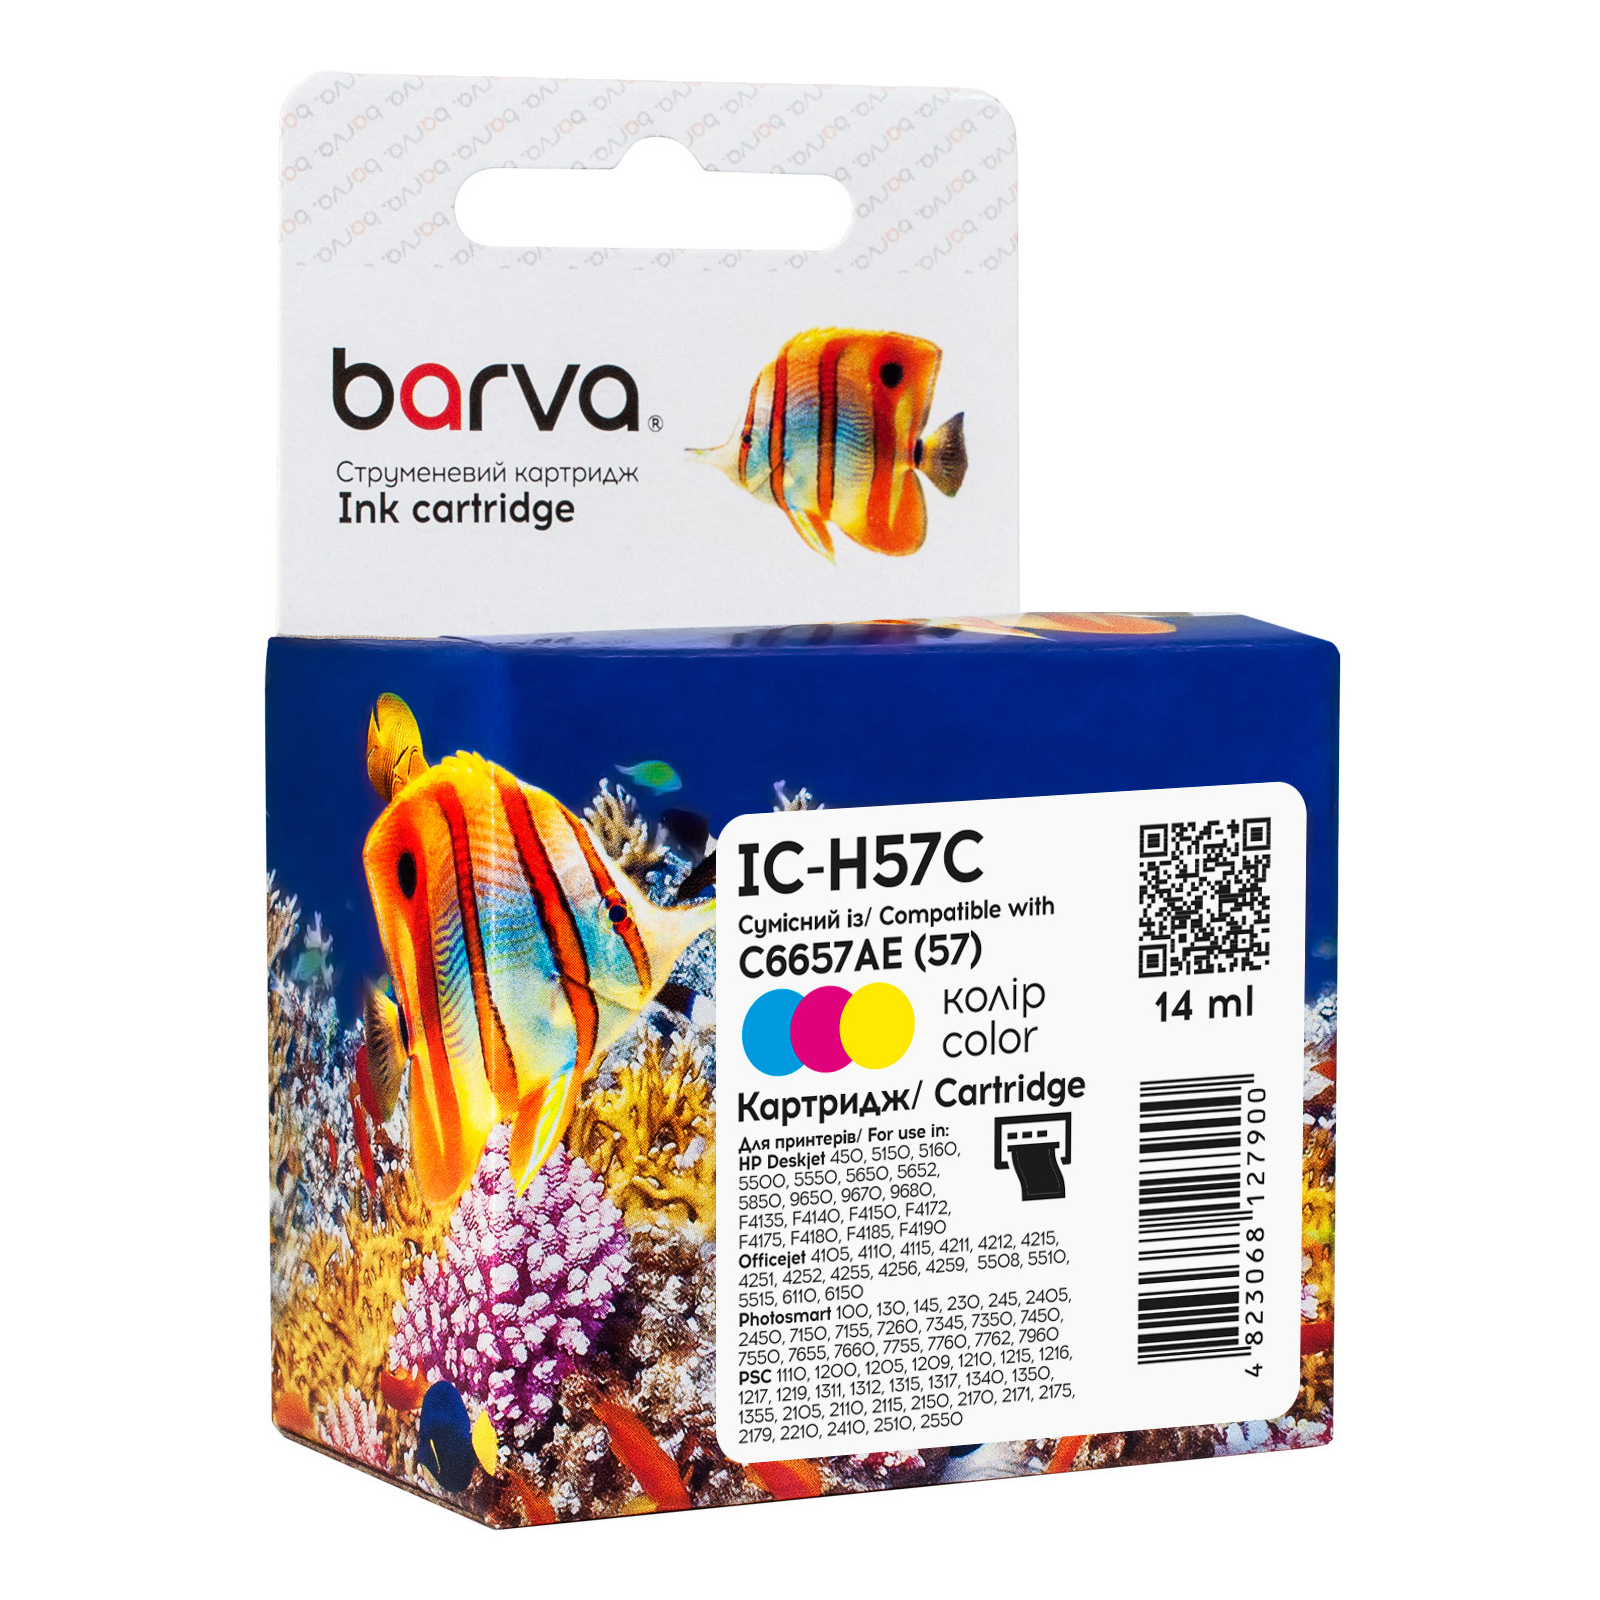 Картридж Barva HP 57 color/C6657AE, 14 мл (IC-H57C)